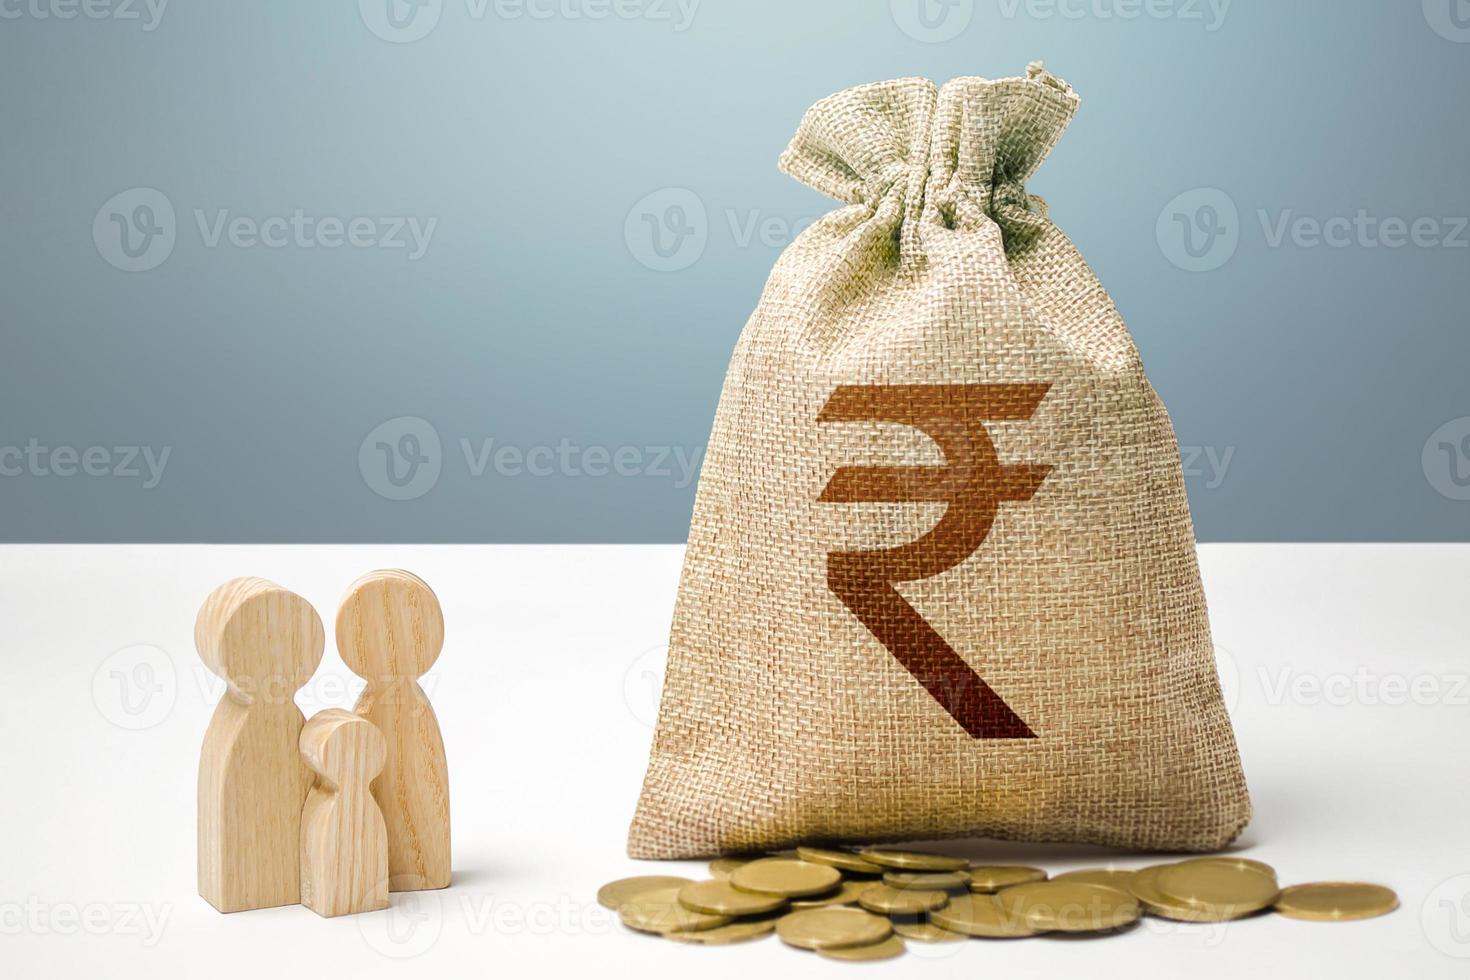 Indische Rupie-Geldbeutel mit Geld- und Familienfiguren. finanzielle Unterstützung sozialer Einrichtungen. Bürgern Hilfestellung leisten. Investitionen in Humankapital, Kultur und soziale Projekte. foto